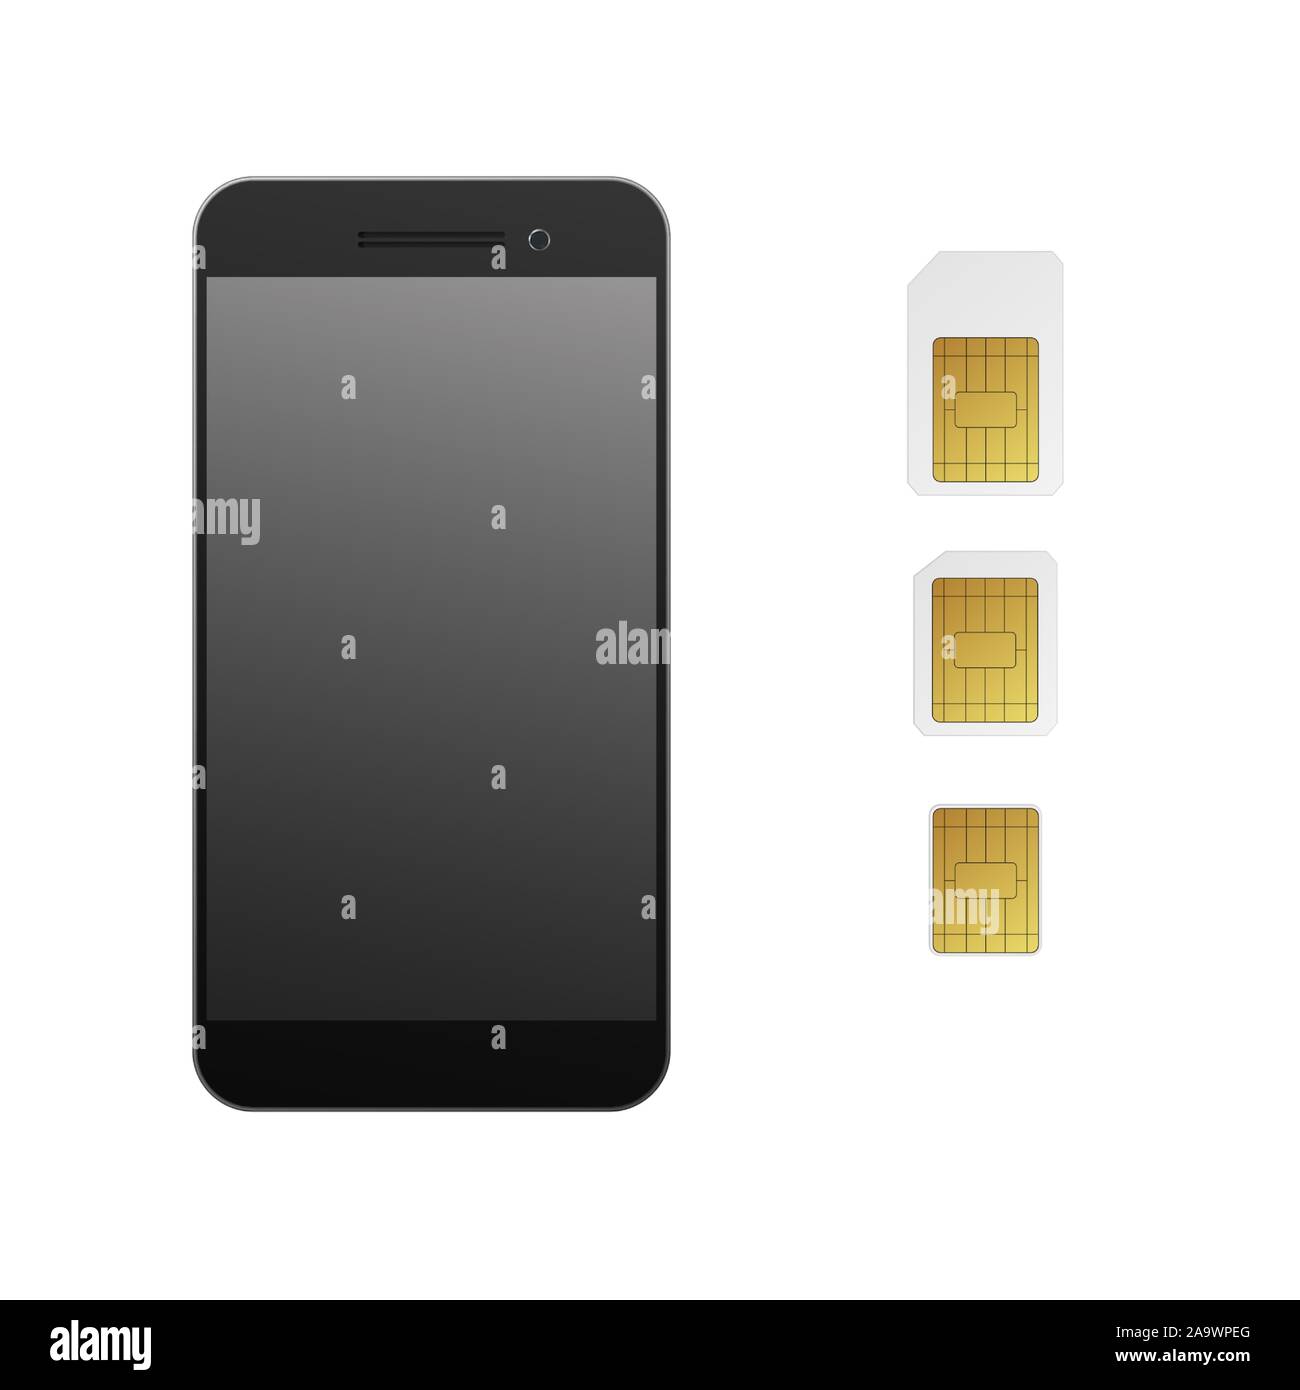 HTC U11 - Carte nano SIM - HTC SUPPORT